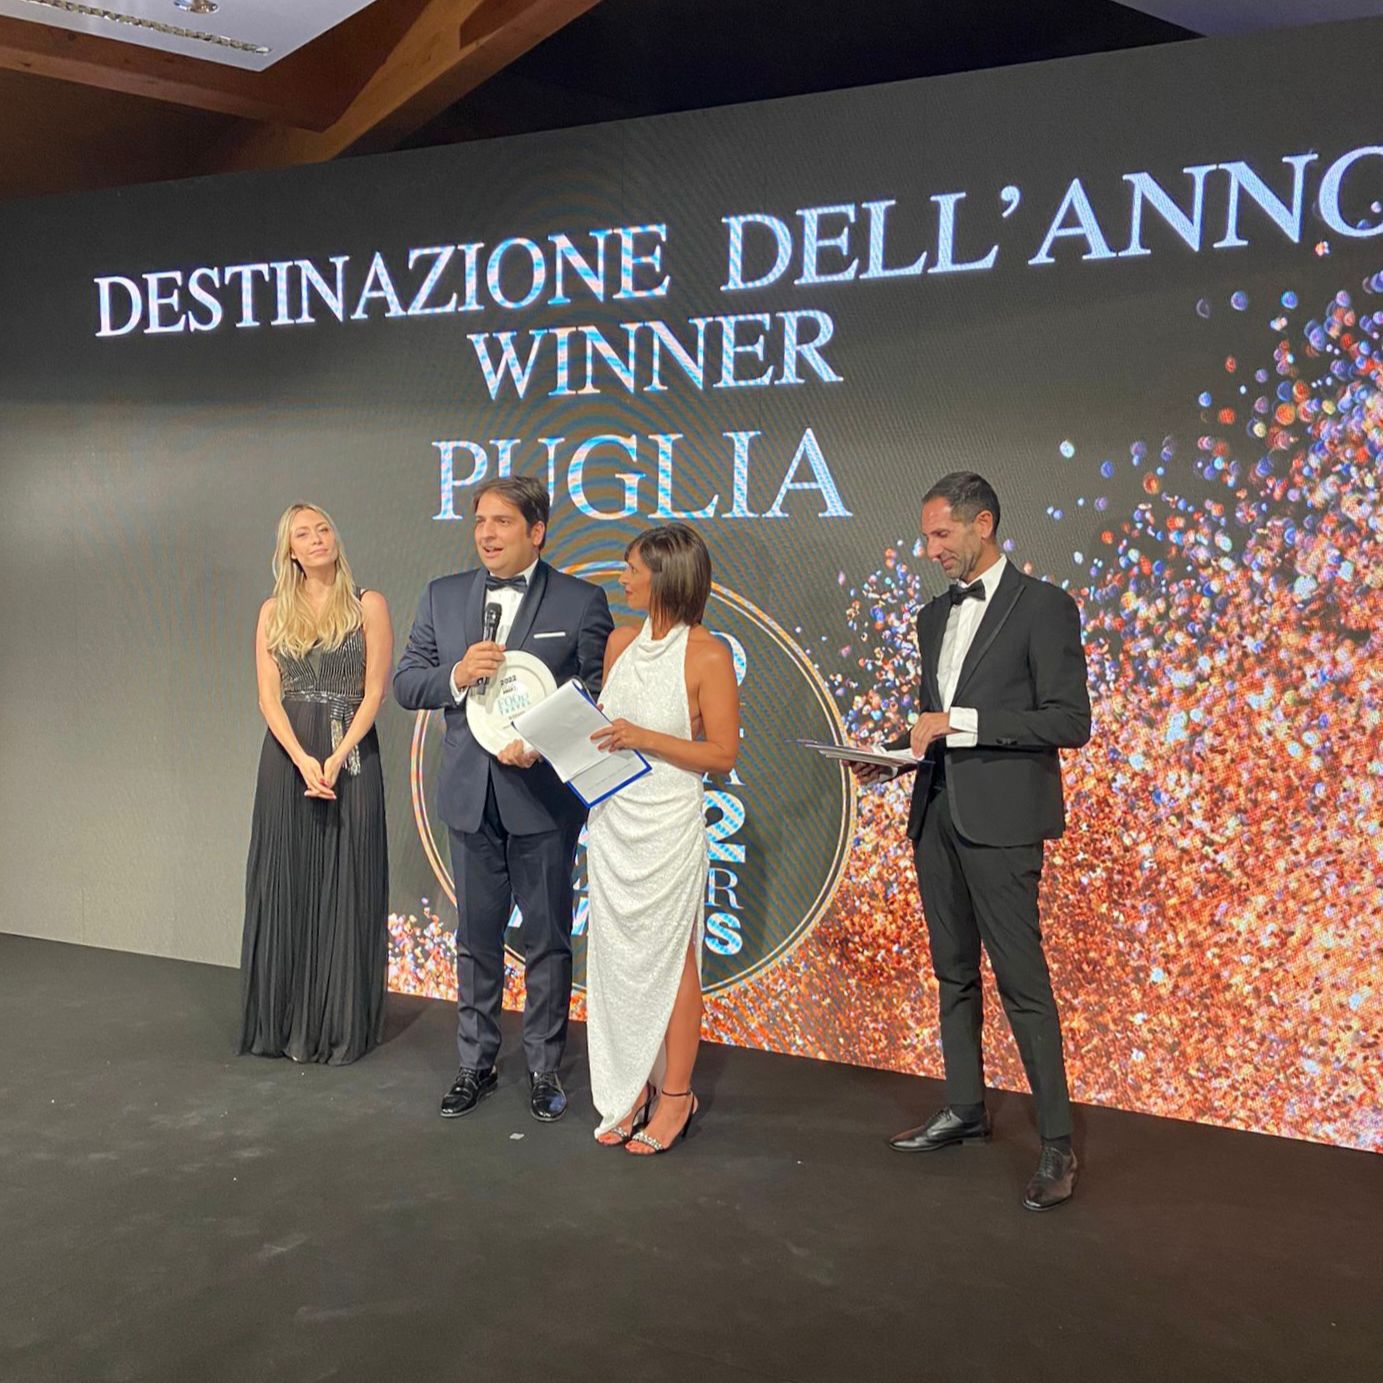 Galleria Puglia destinazione dell’anno agli Awards 2022 di Food and Travel Italia: la serata di gala a Ugento con i premiati e gli ospiti internazionali - Diapositiva 1 di 3